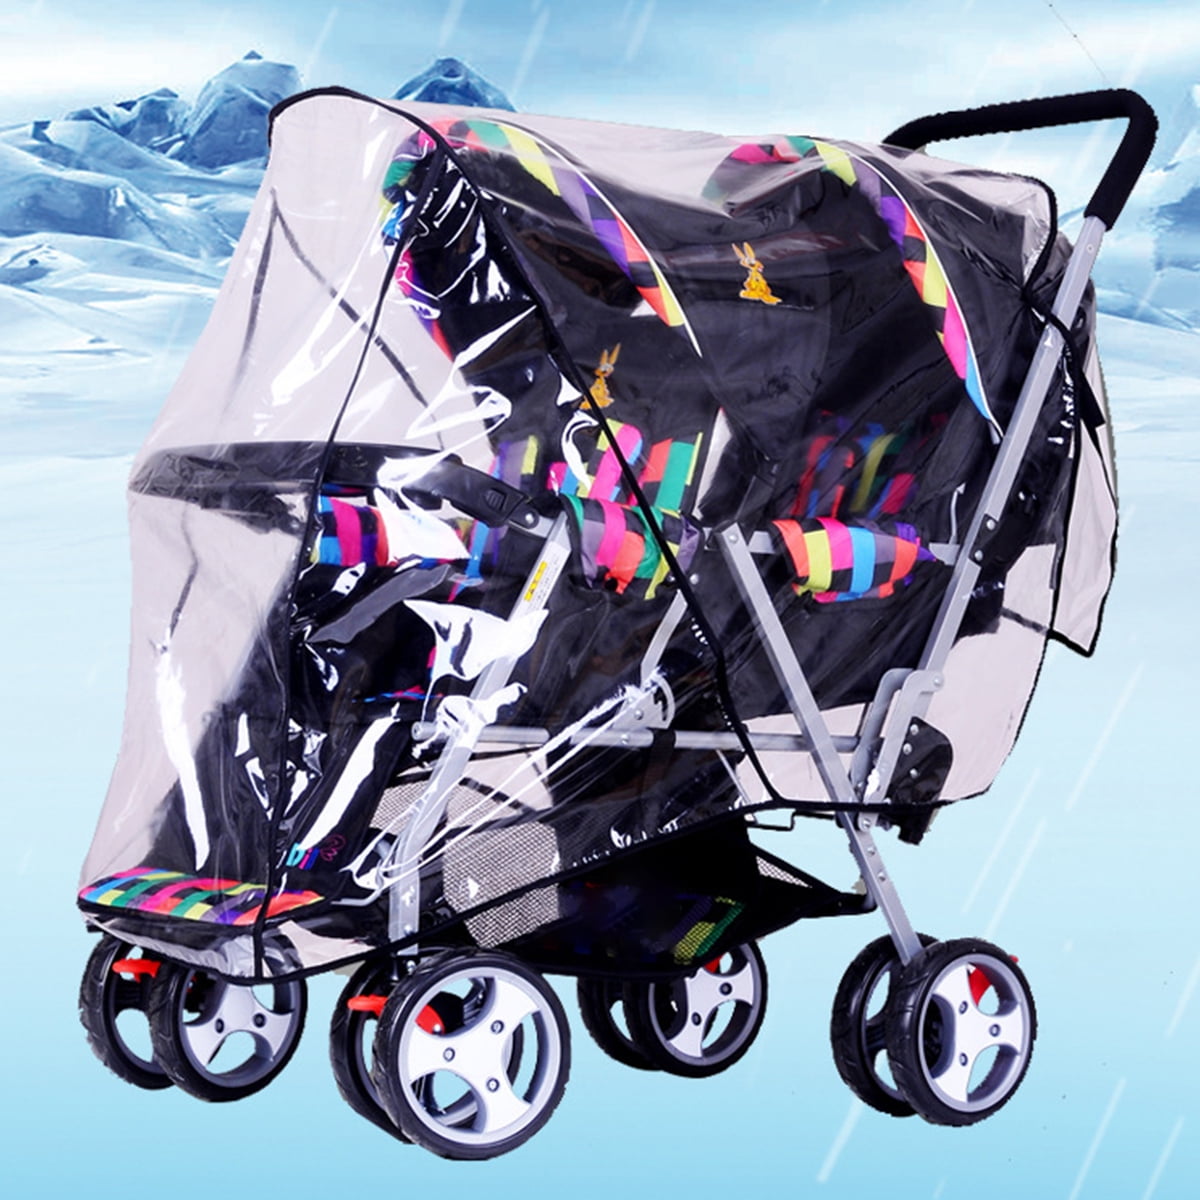 rain cover for stroller walmart